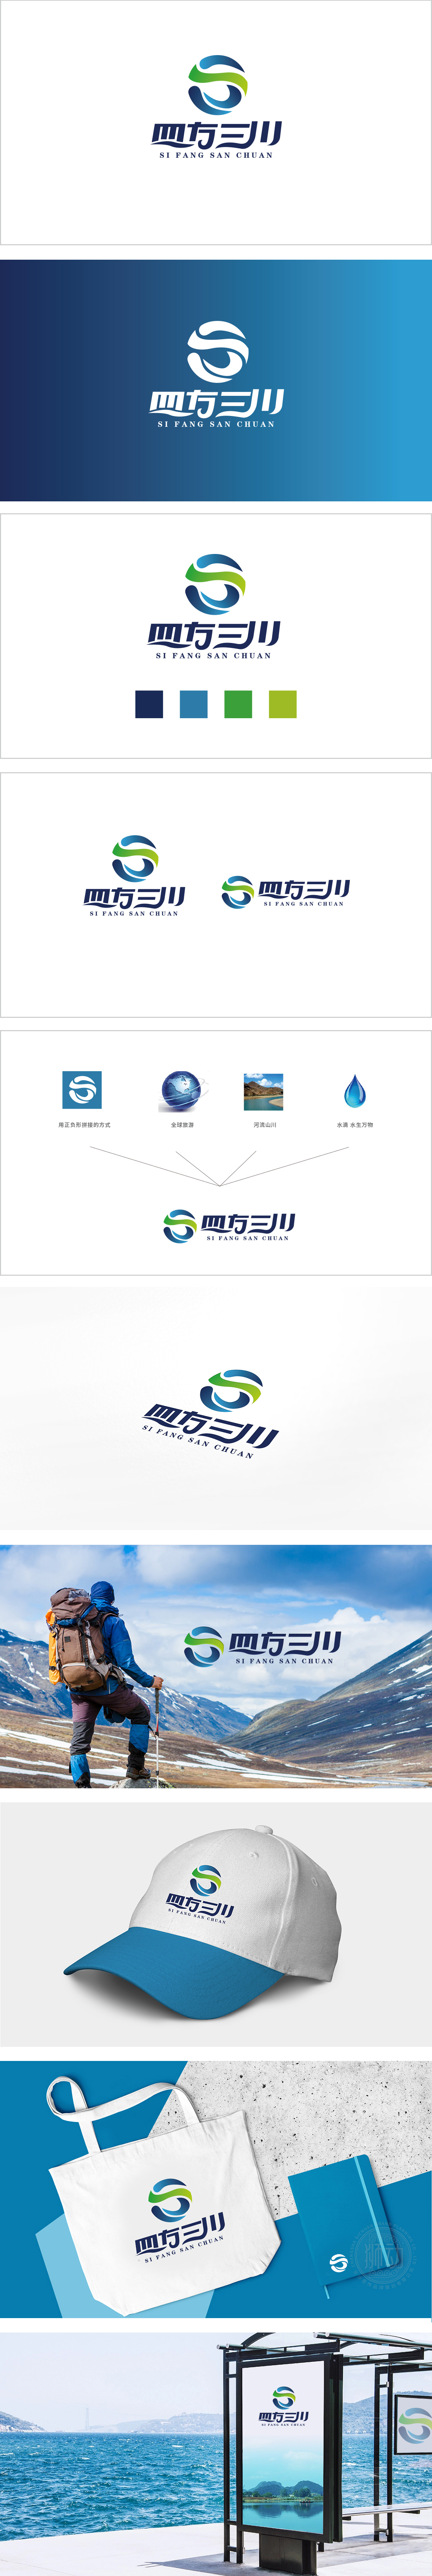 四方三川 旅游服务LOGO设计